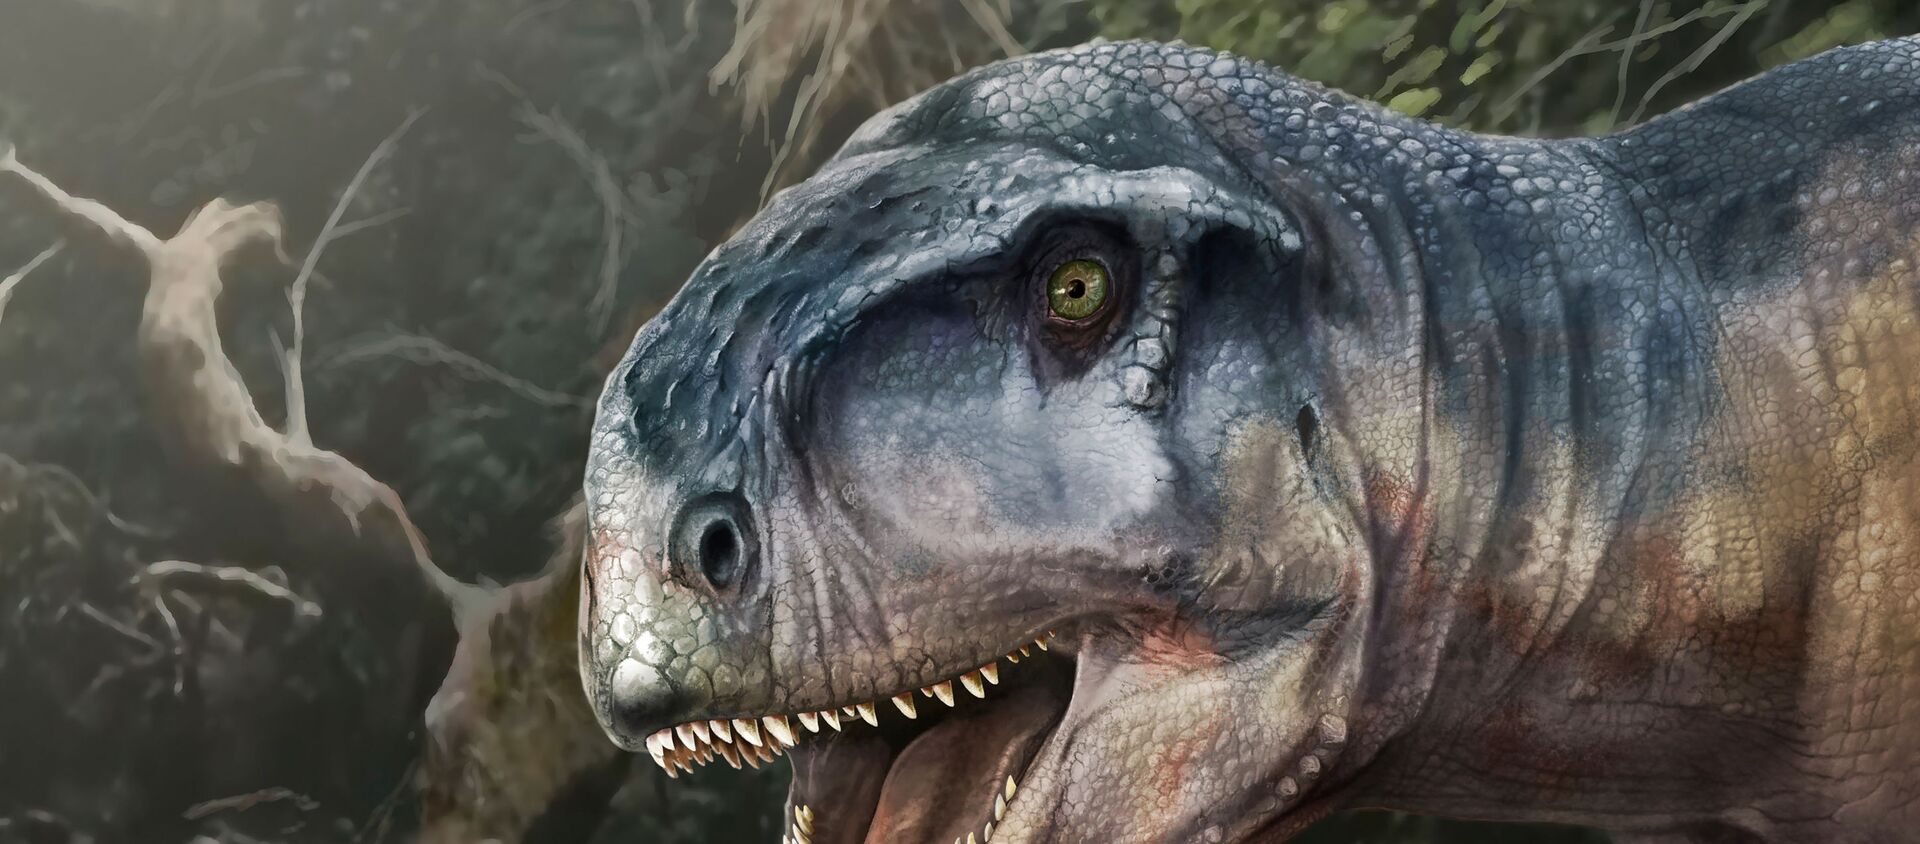 رسم تخيلي للديناصور لوكالكان أليوكرانيانوس الذي كان يأكل اللحوم في العصر الطباشيري وعاش قبل حوالي 80 مليون عاما في منطقة باتاغونيا، الأرجنتين - سبوتنيك عربي, 1920, 01.04.2021